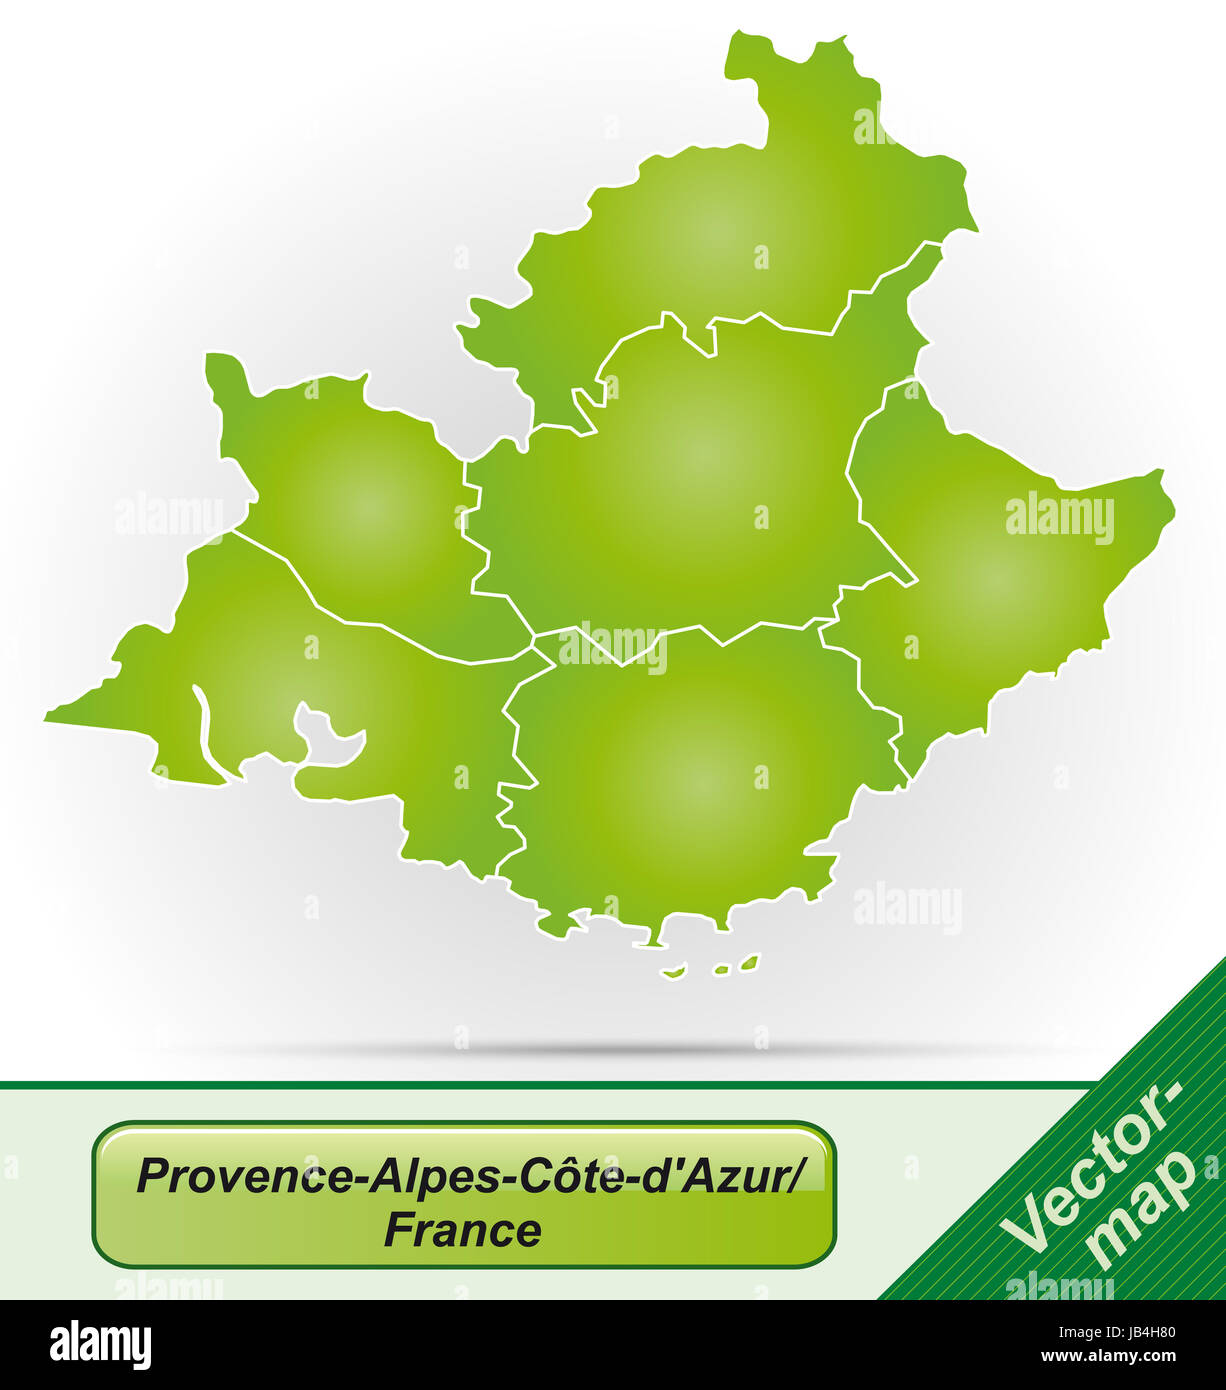 Provence-Alpes-Côte d'Azur en Frankreich als Grenzen en Grenzkarte mit Grün. Durch die Gestaltung ansprechende fügt sich die Karte perfekt dans Ihr Vorhaben ein. Banque D'Images